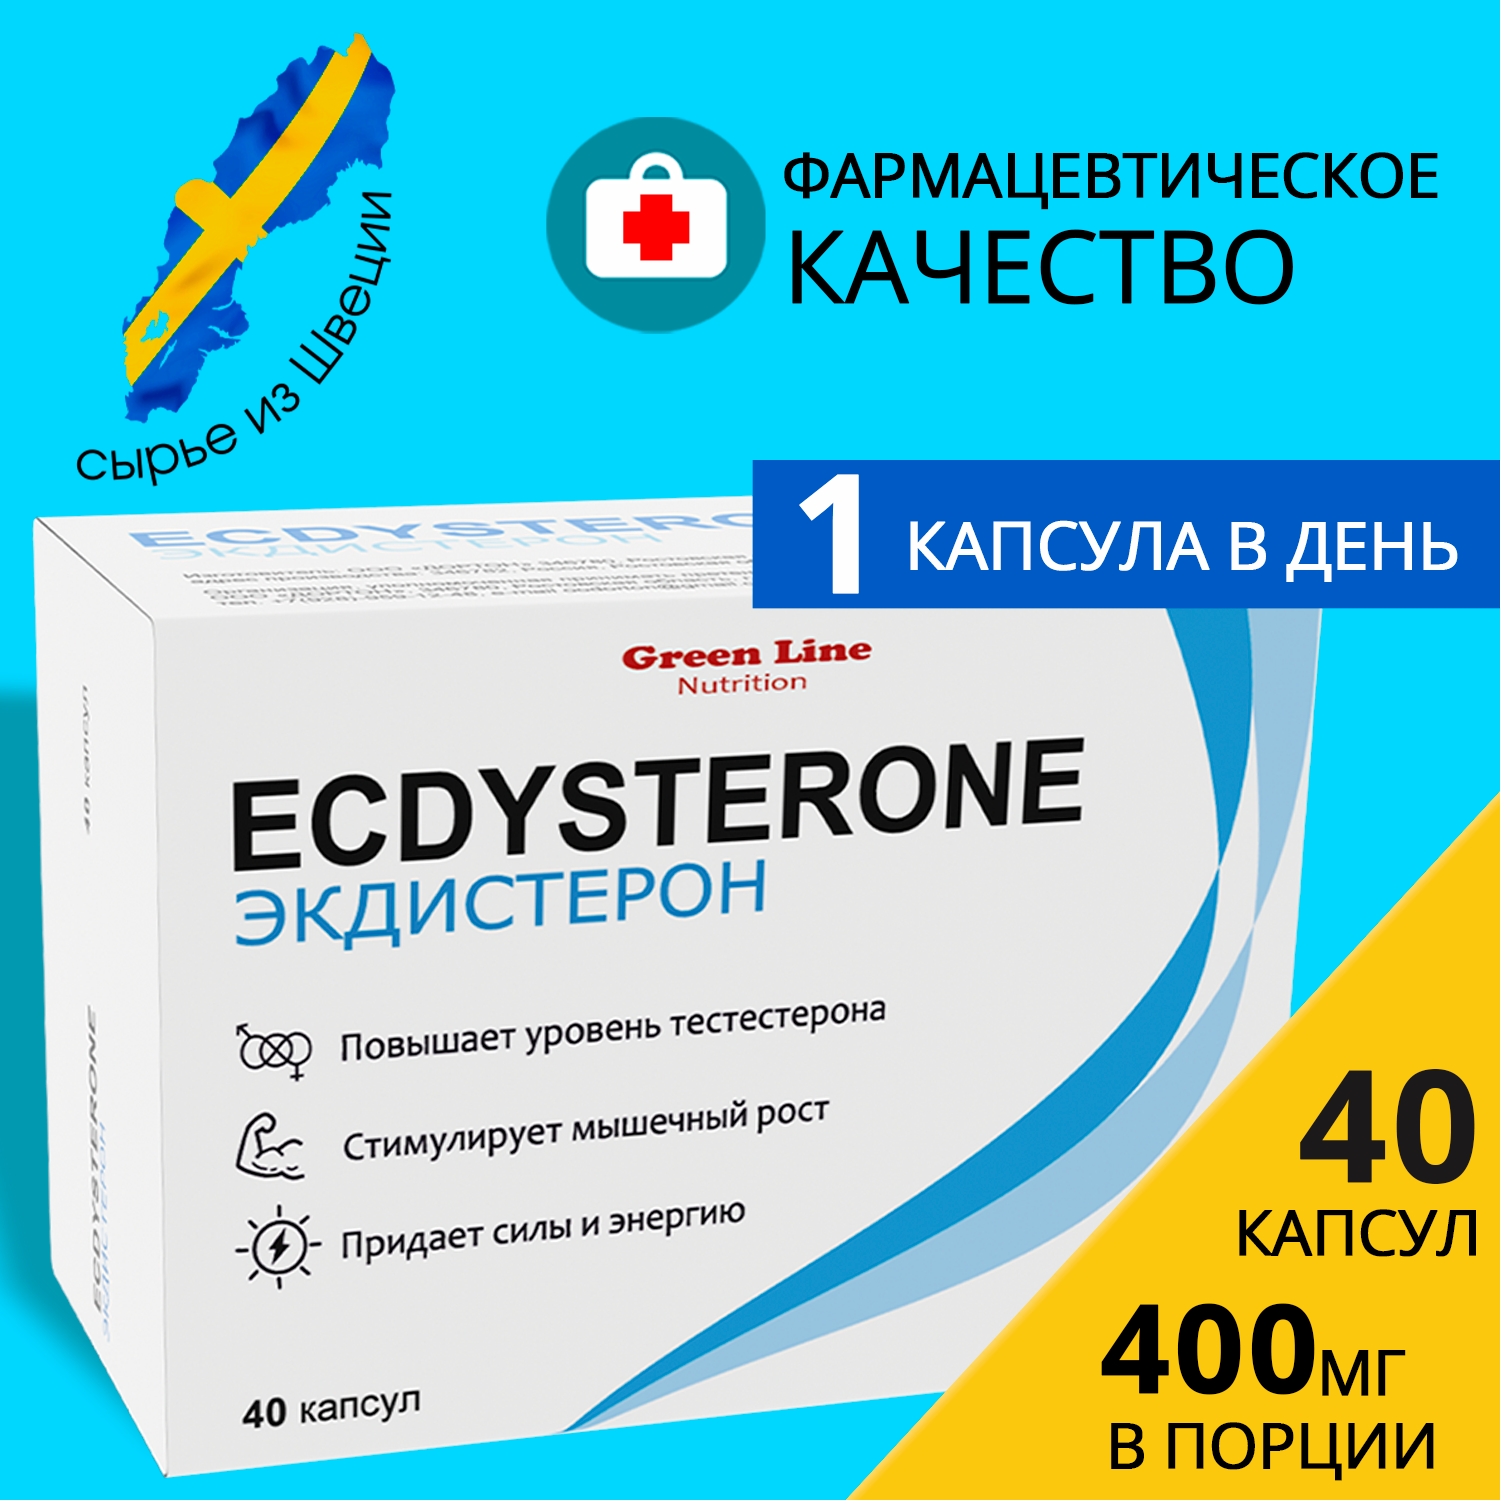 Бустер тестостерона Экдистерон 400 мг, БАД Ecdysterone-S 40 порций это средство для повышения тестостерона и витамины для мужчин, тестобустер